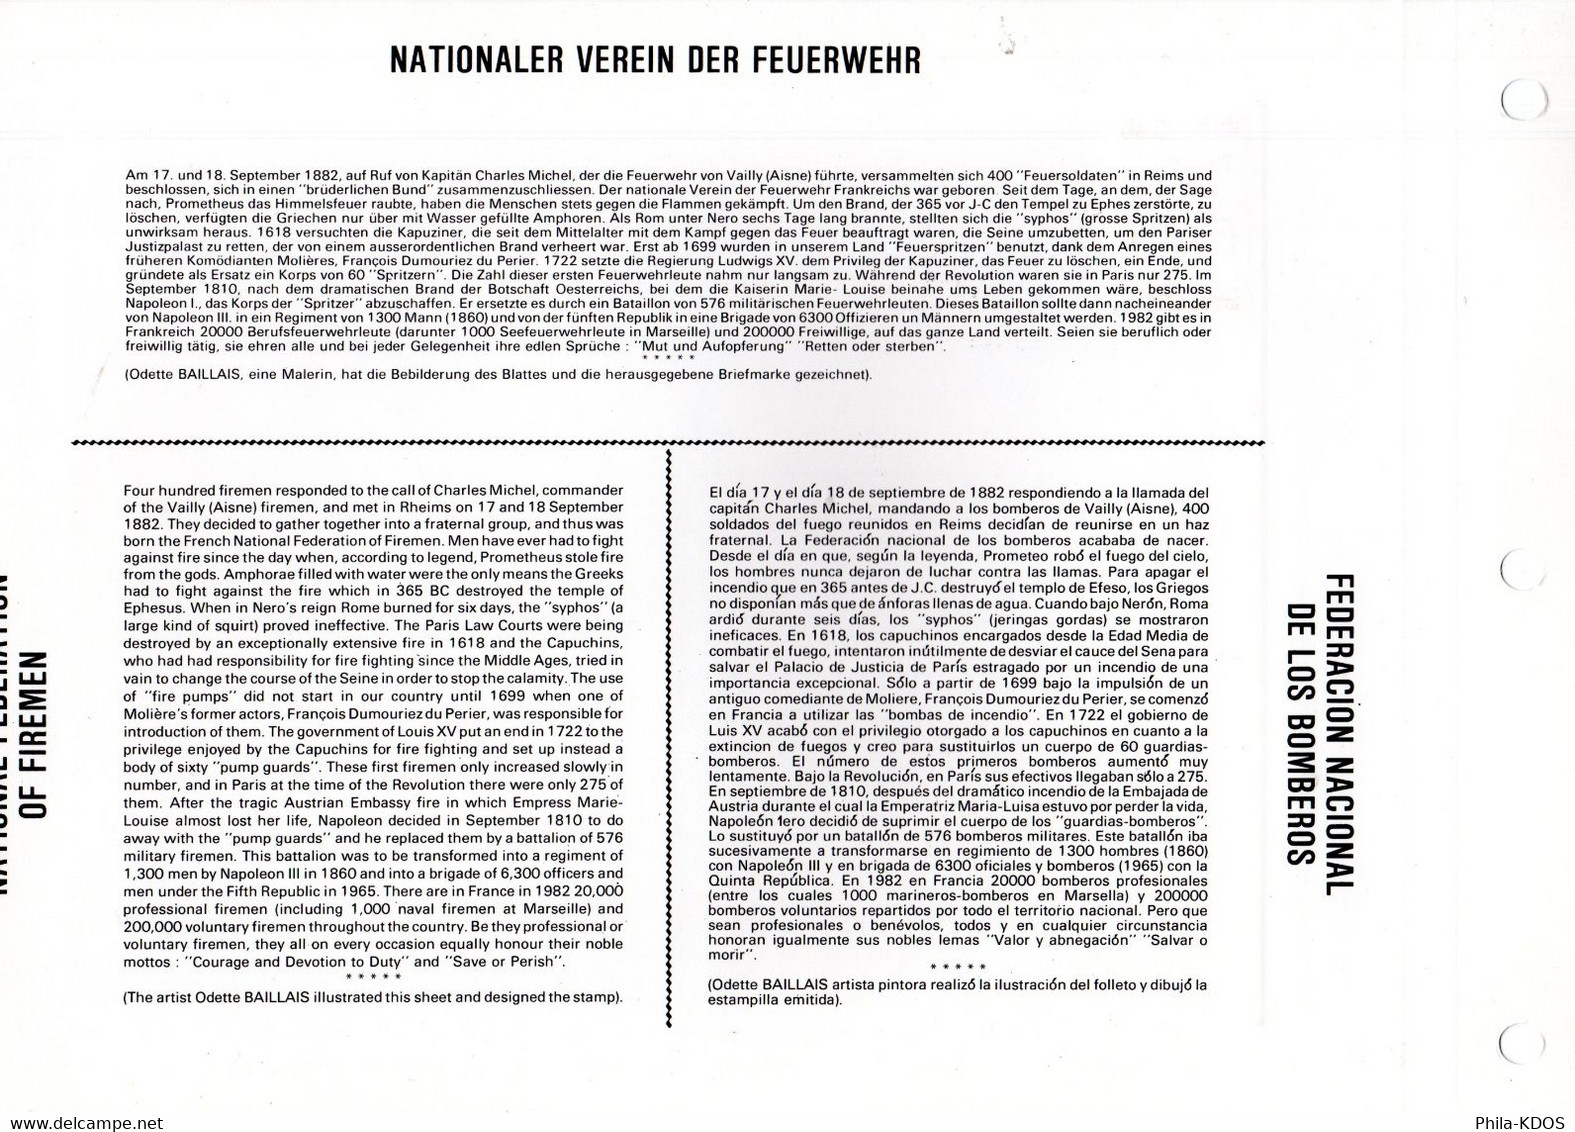 (MULTILINGUE) " FEDERATION NATIONALE DES SAPEURS-POMPIERS " Sur Feuillet CEF 1er Jour N°té MULTILINGUE De 1982 N°YT 2233 - Feuerwehr